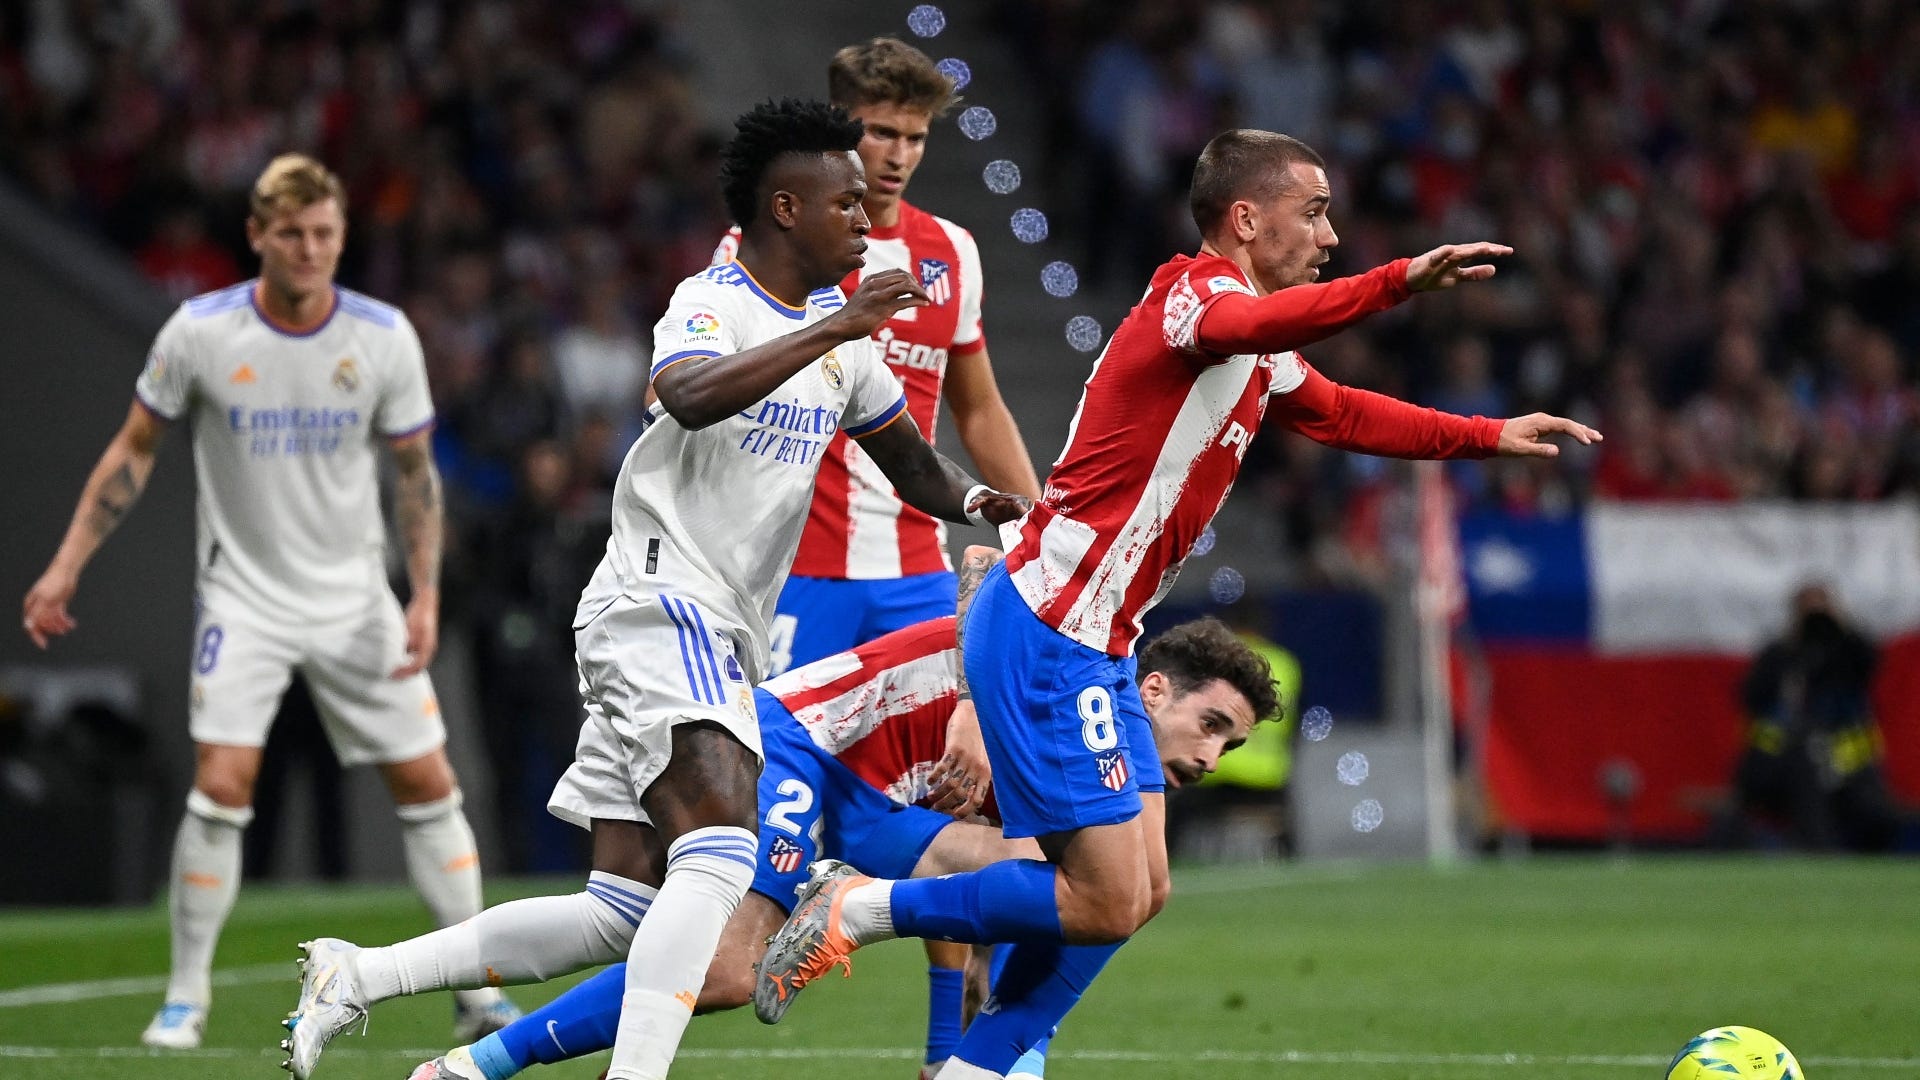 Atlético de Madrid - Real Madrid, el derbi en imágenes